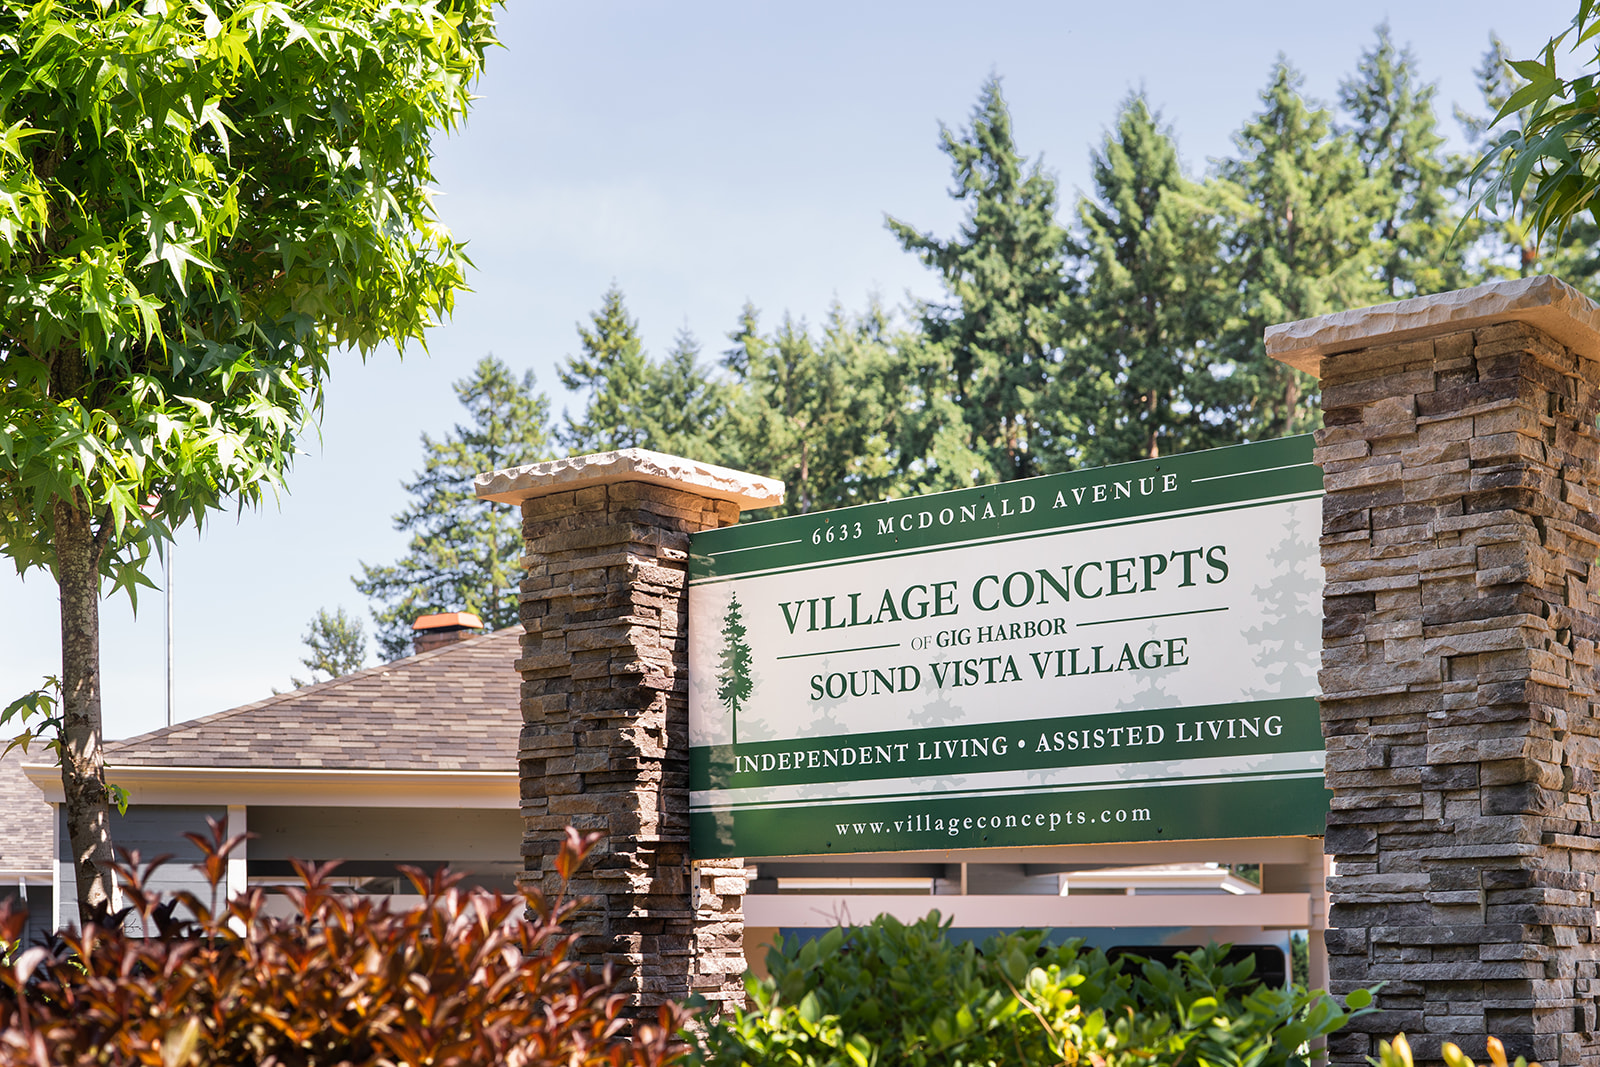 Sound Vista Village image